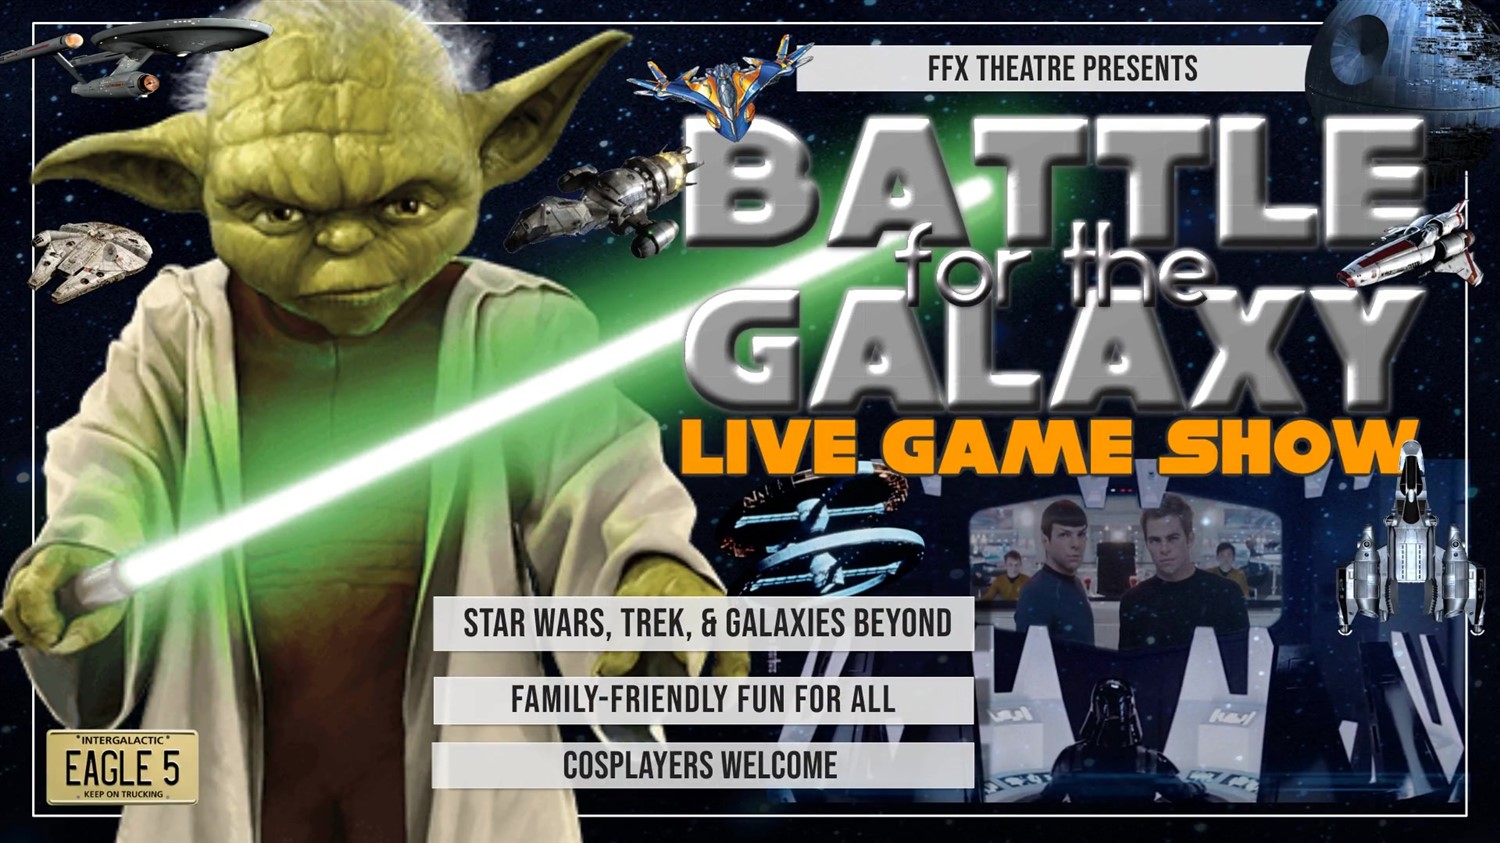 Battle for the Galaxy: Live Game Show SCI-FI FUN! on mars 24, 19:00@FFX Theatre - Choisissez un siège,Achetez des billets et obtenez des informations surFamily Fun Xperience tickets.ffxshow.org